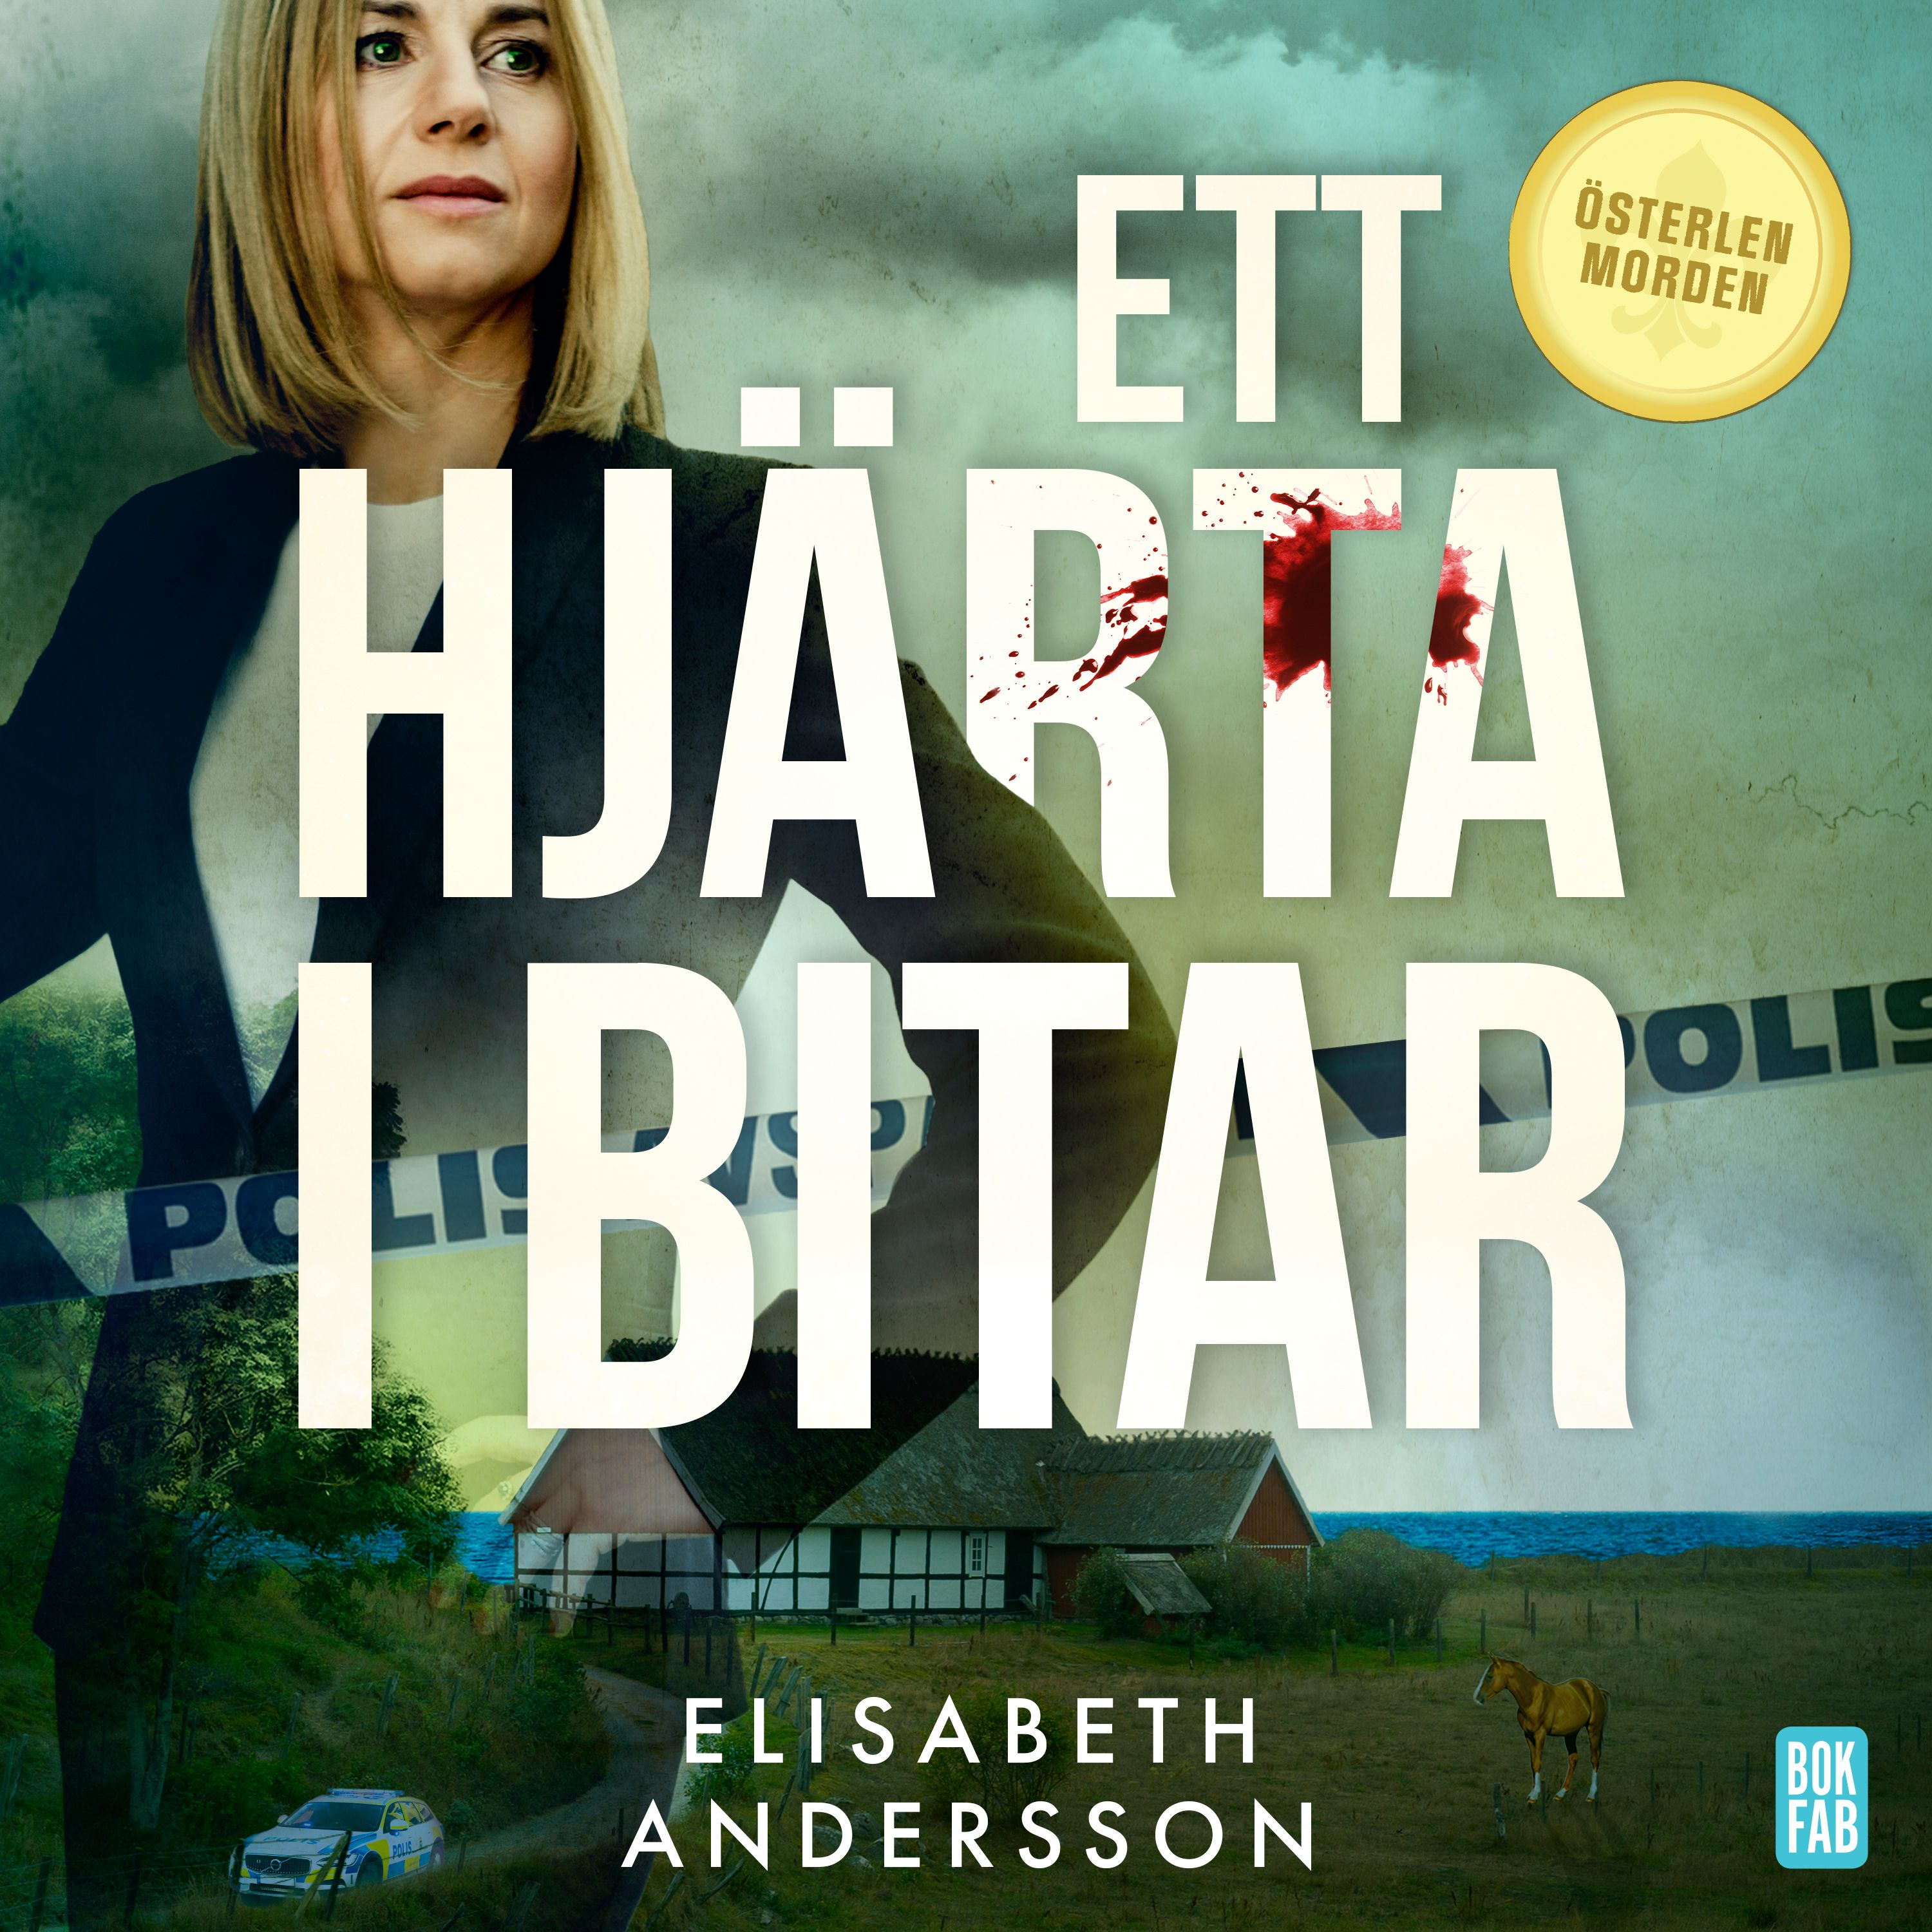 Ett hjärta i bitar, audiobook by Elisabeth Andersson